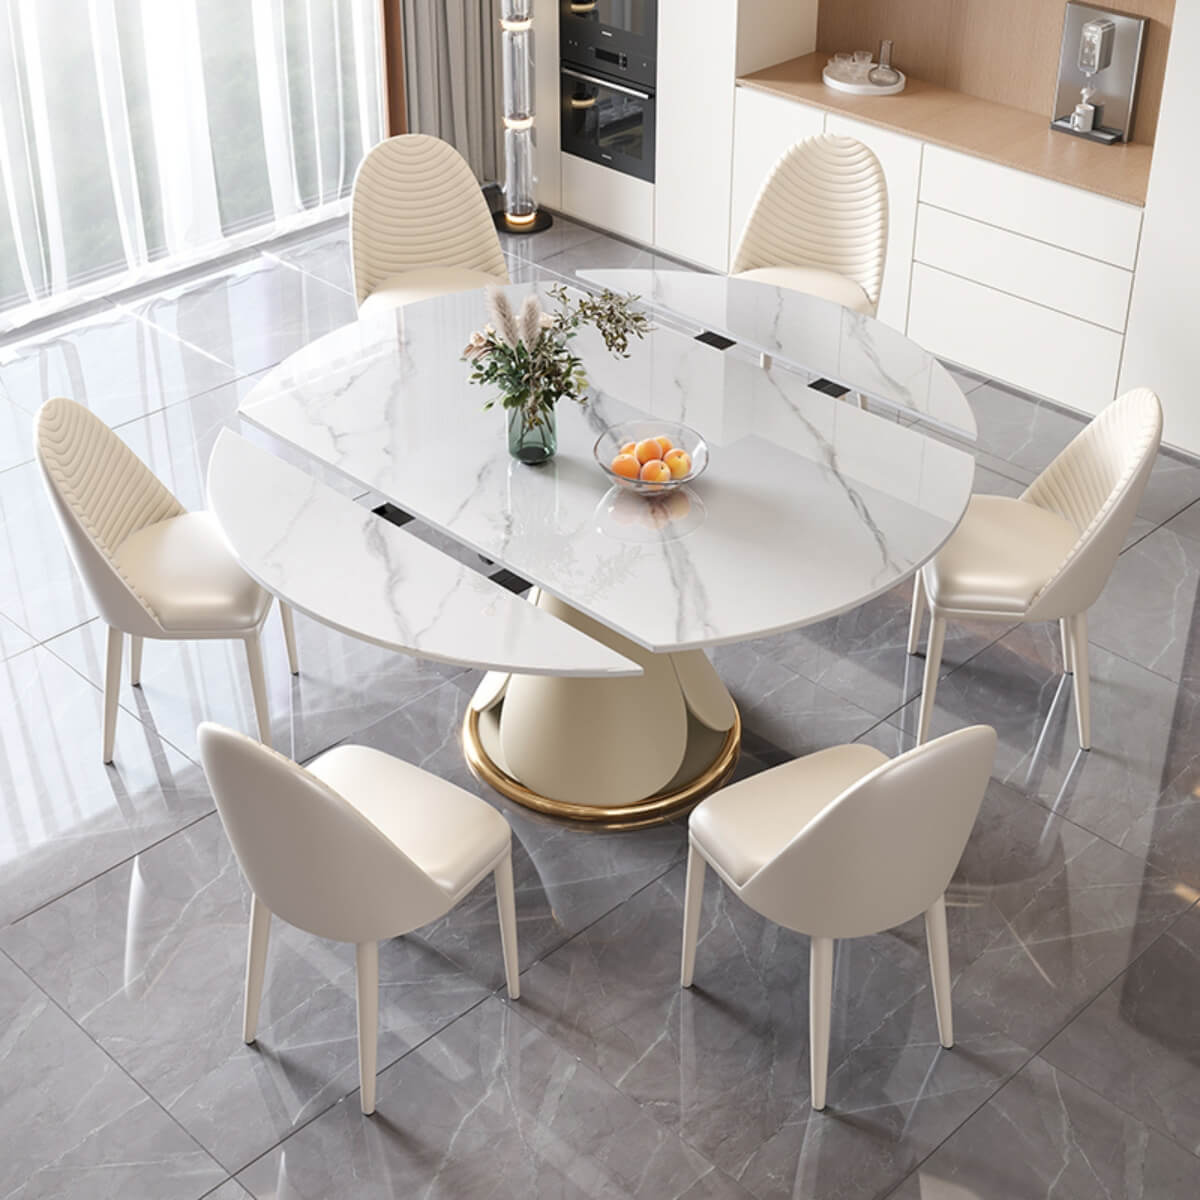 Tundra-M332-Premium-Round-Rotating-Dining-Table-elegant-interior-Australia-6